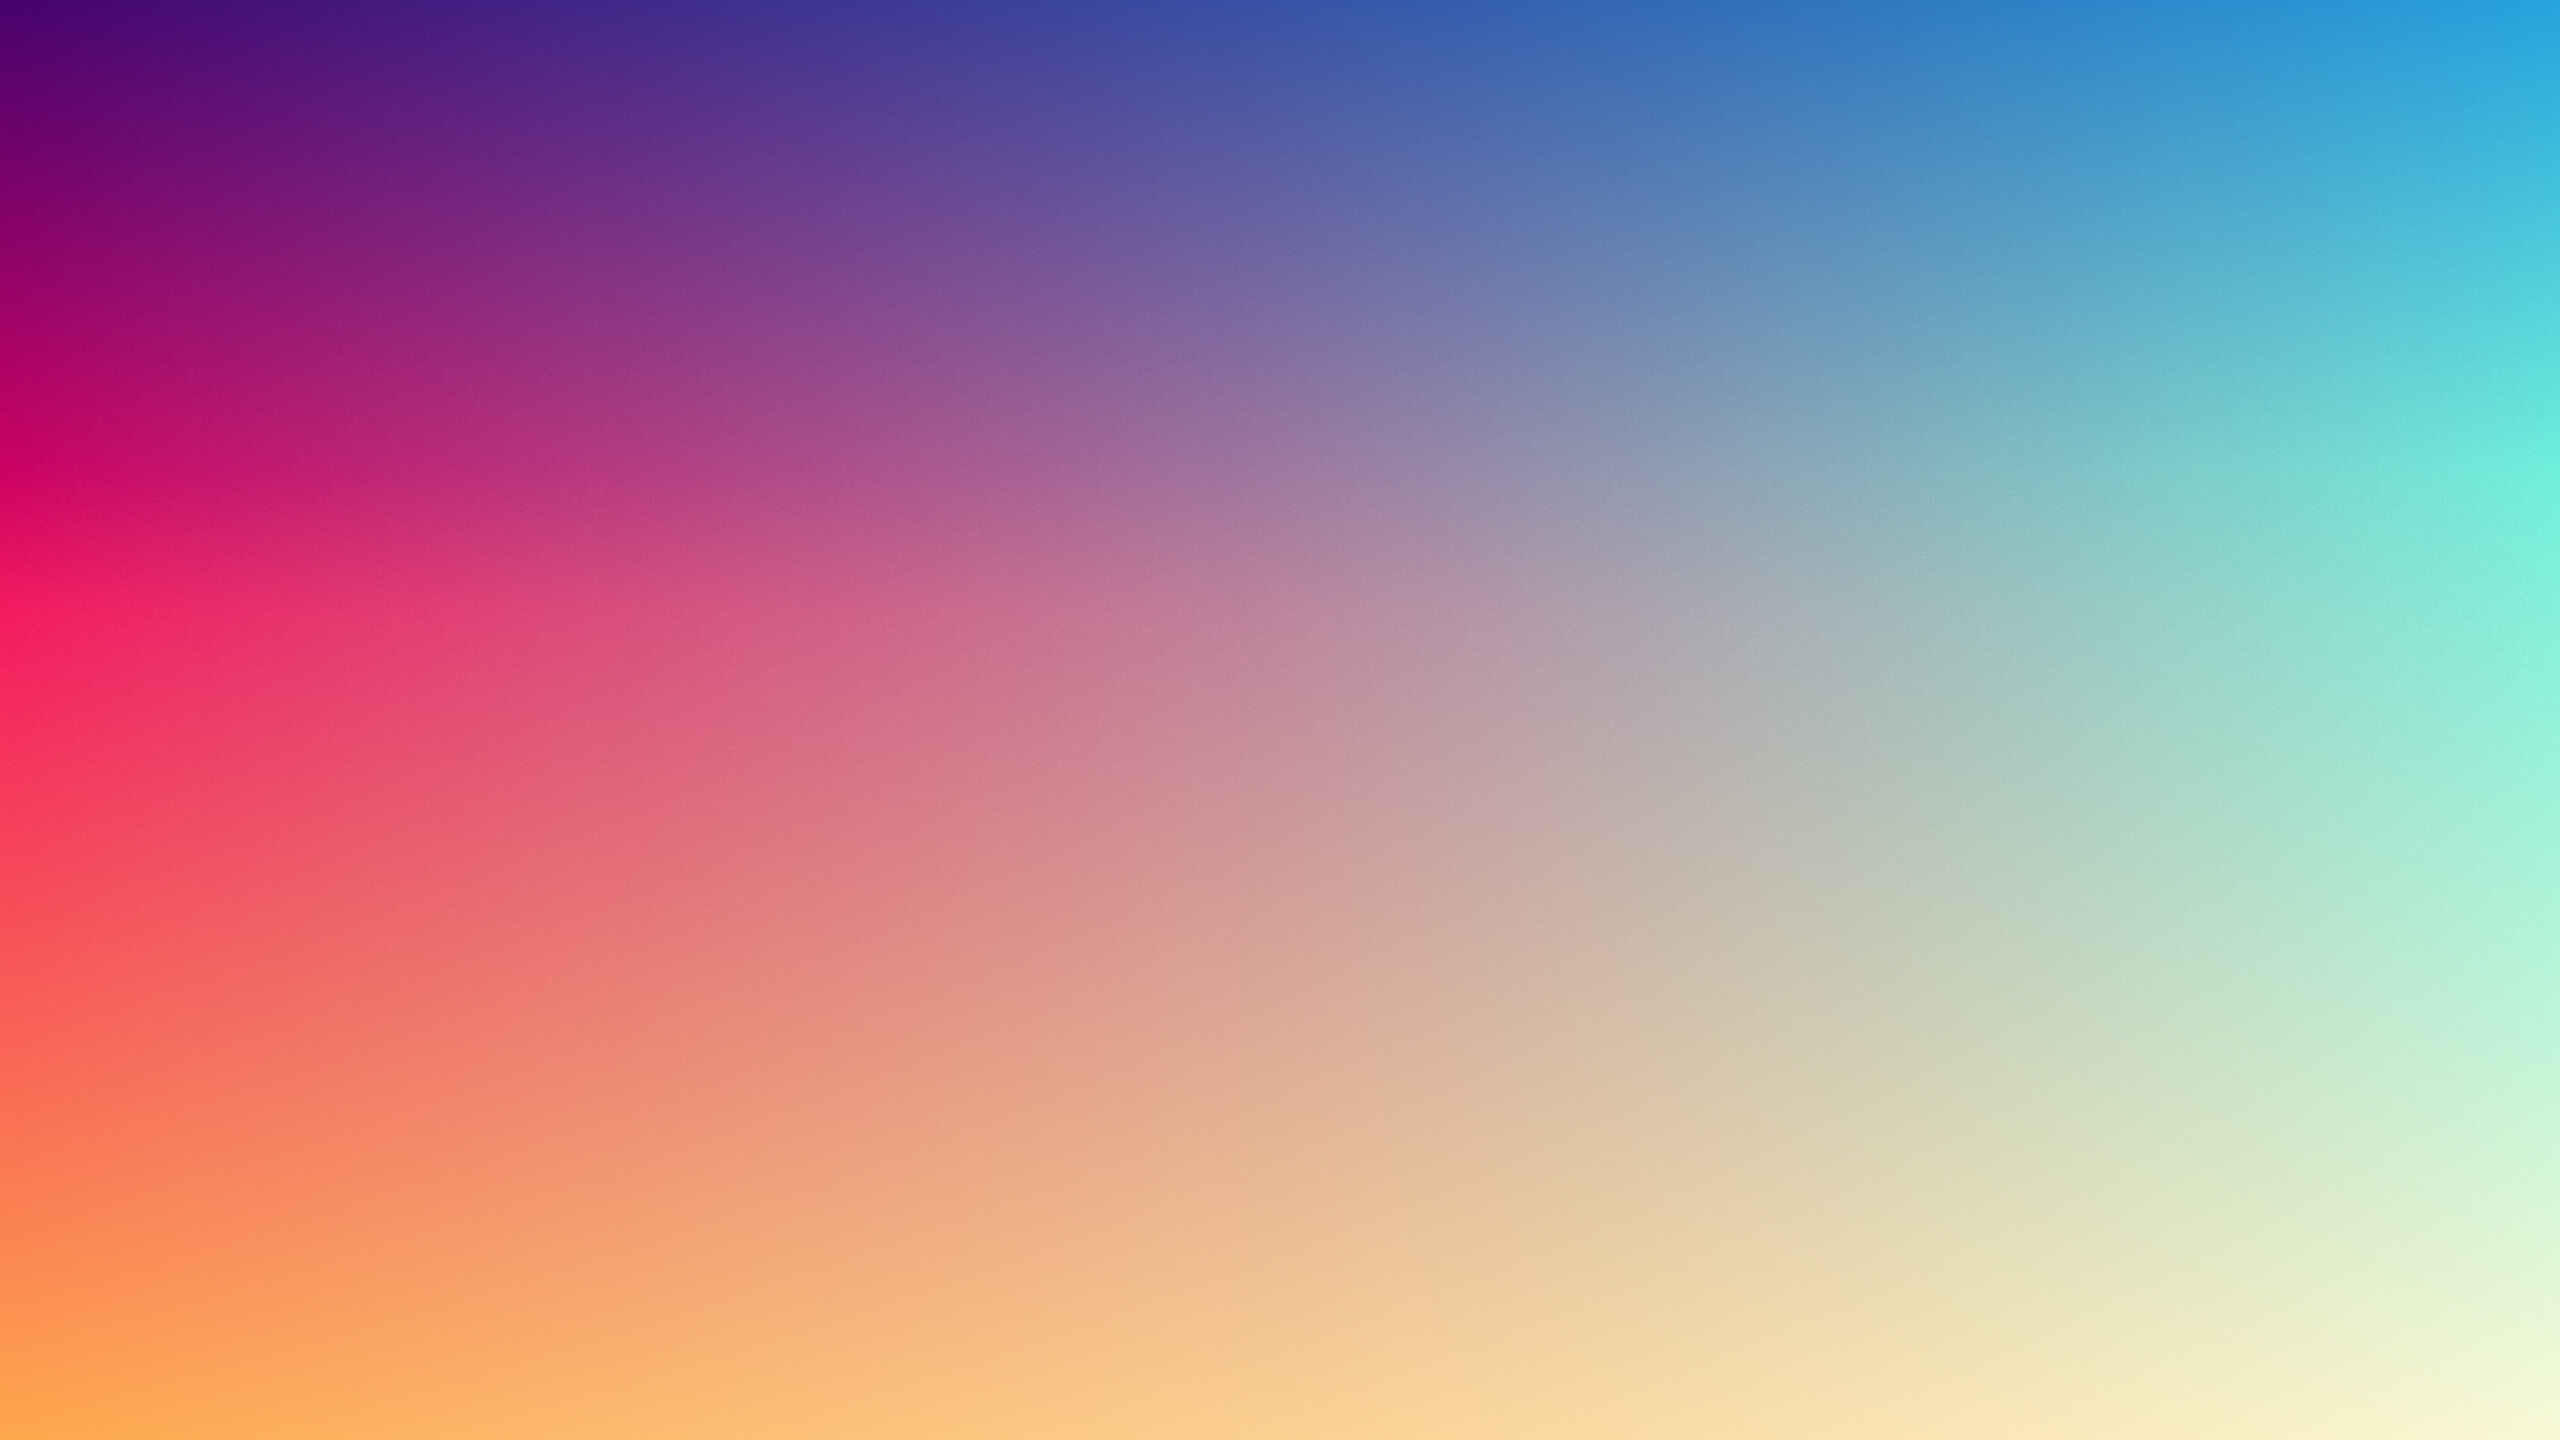 冷静, 气氛, 彩虹, 颜色, 粉红色 壁纸 2560x1440 允许